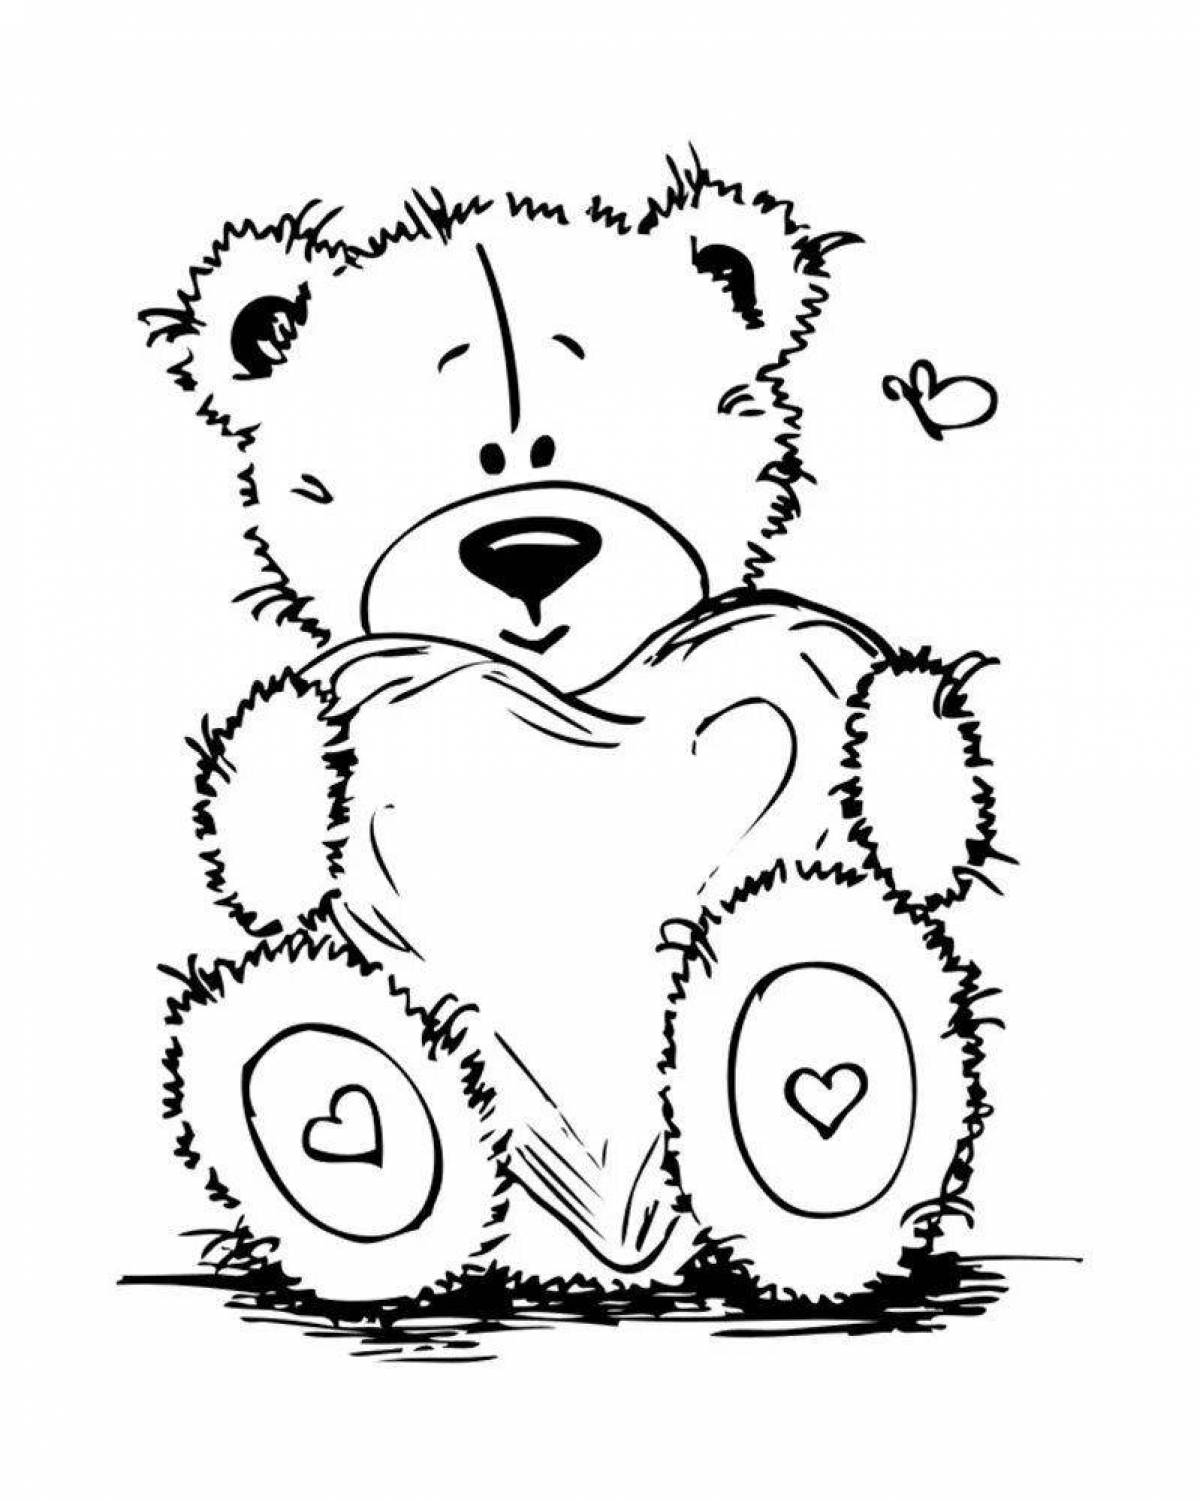 Великолепный медведь с рисунком сердца